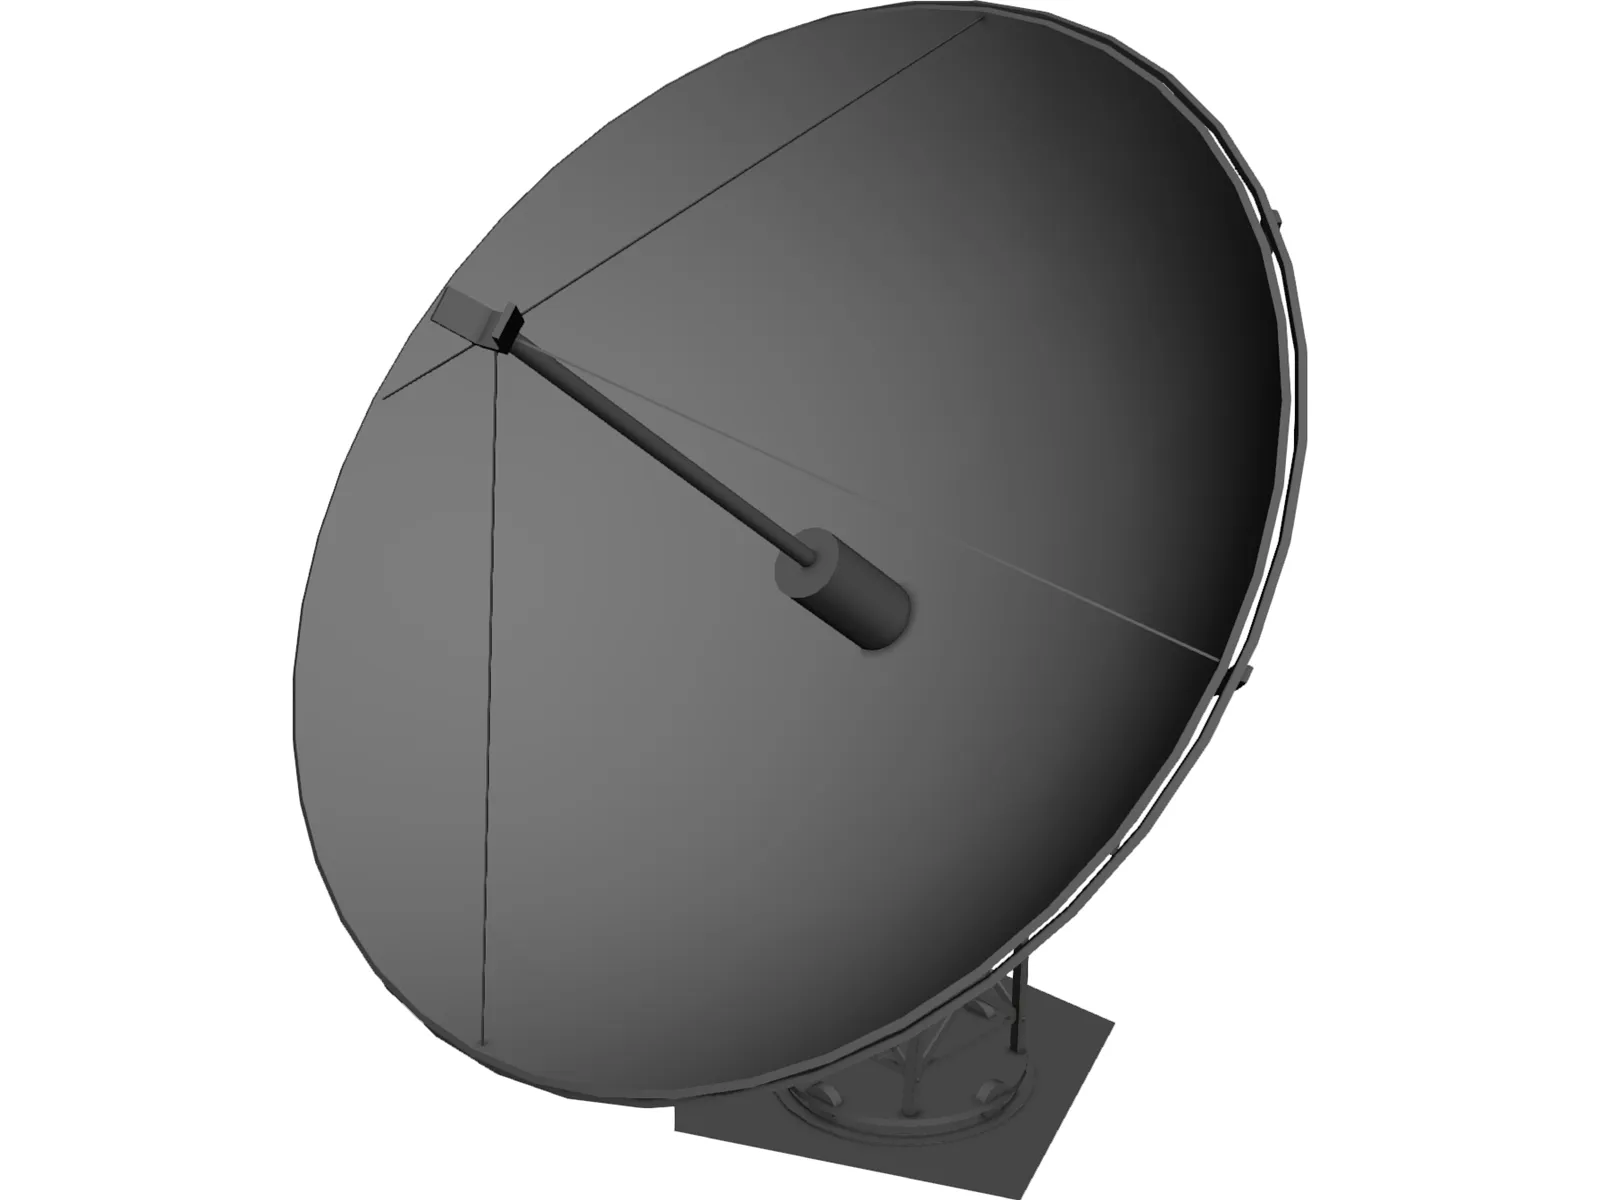 BLEND antena 3D Models - Download 3D antena Available formats: c4d